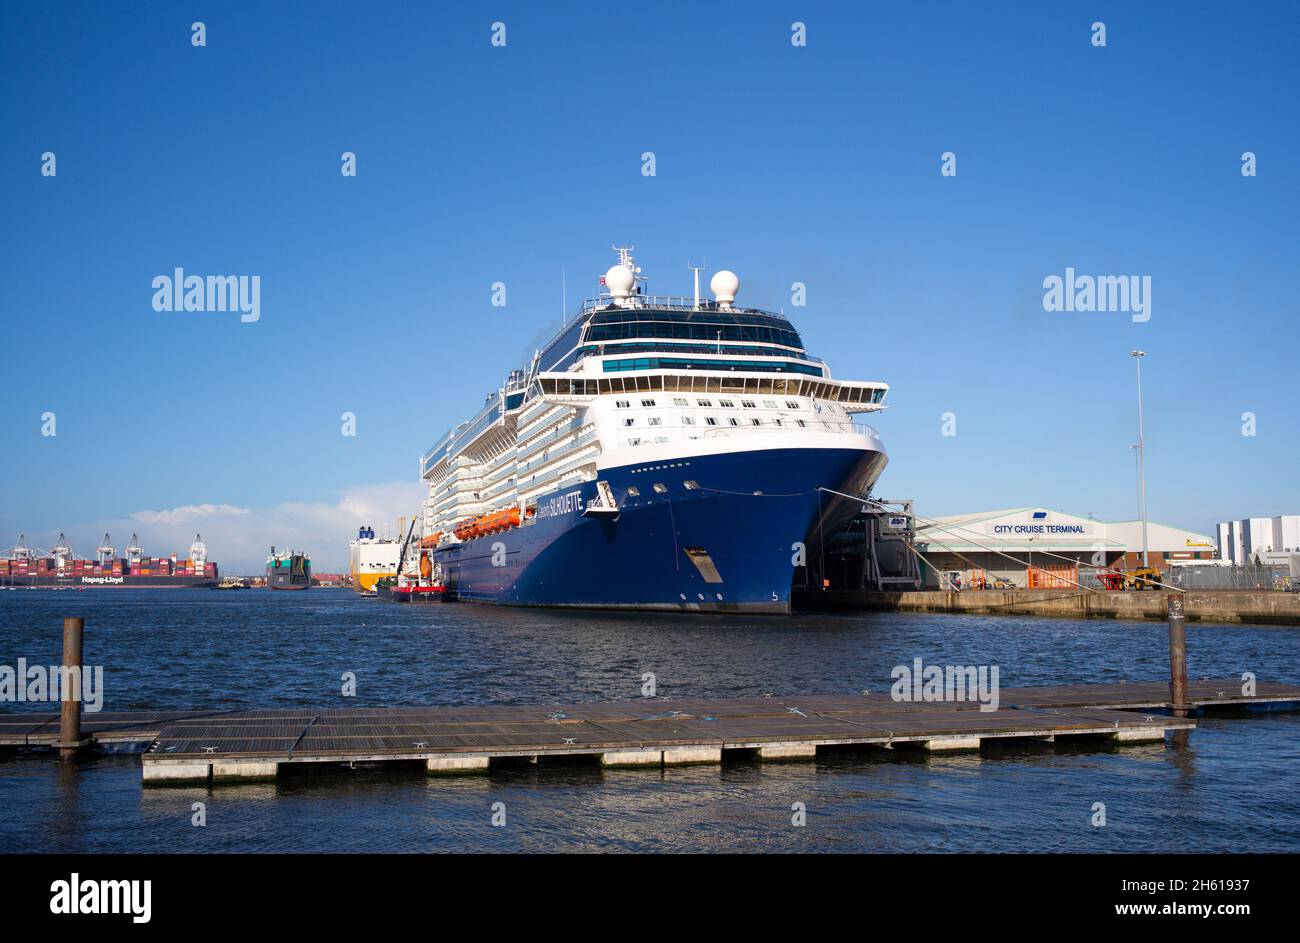 Celebrity Cruises Cruise Liner Celebrity Silhouette an Southampton Docks England wird von Jaynee W aufgetankt bereit für seinen Abflug. Stockfoto